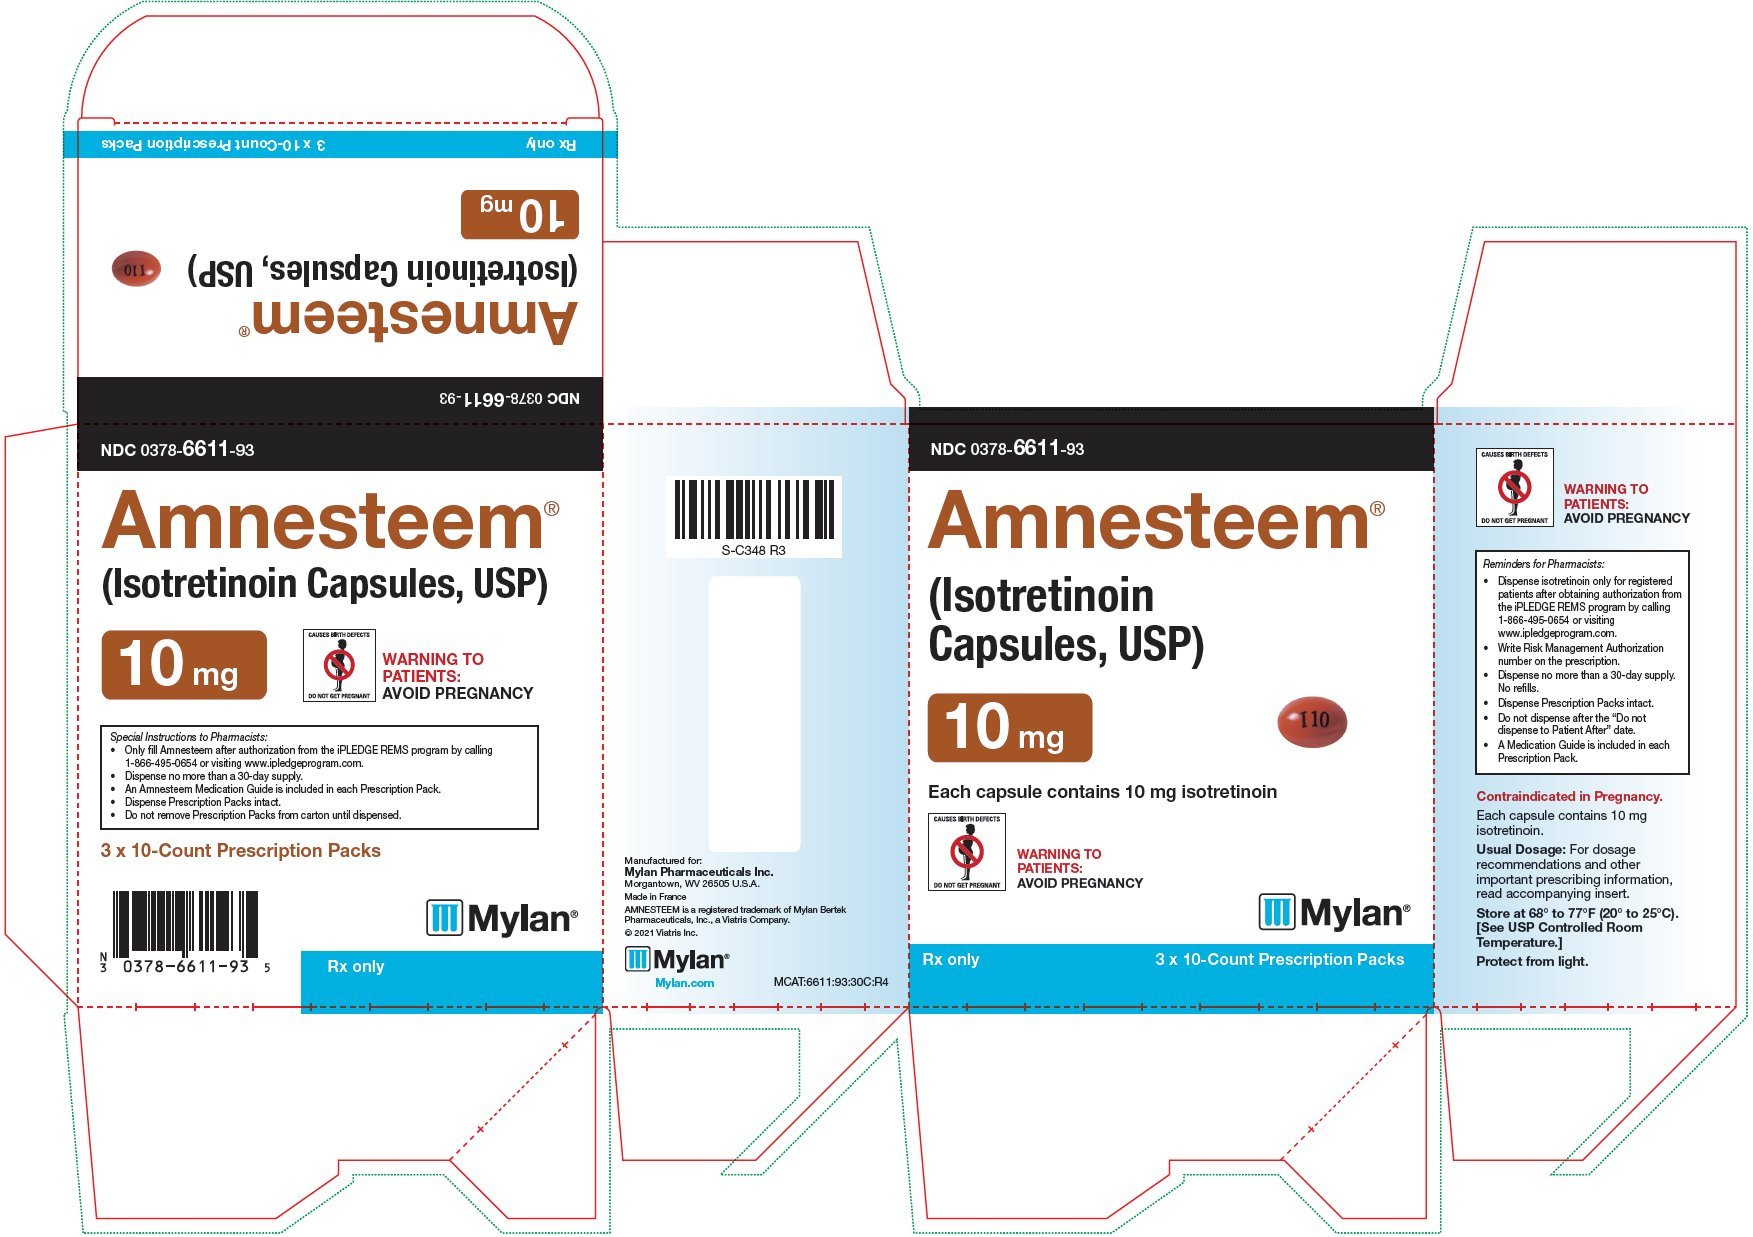 Amnesteem Capsules 10 mg Carton Label